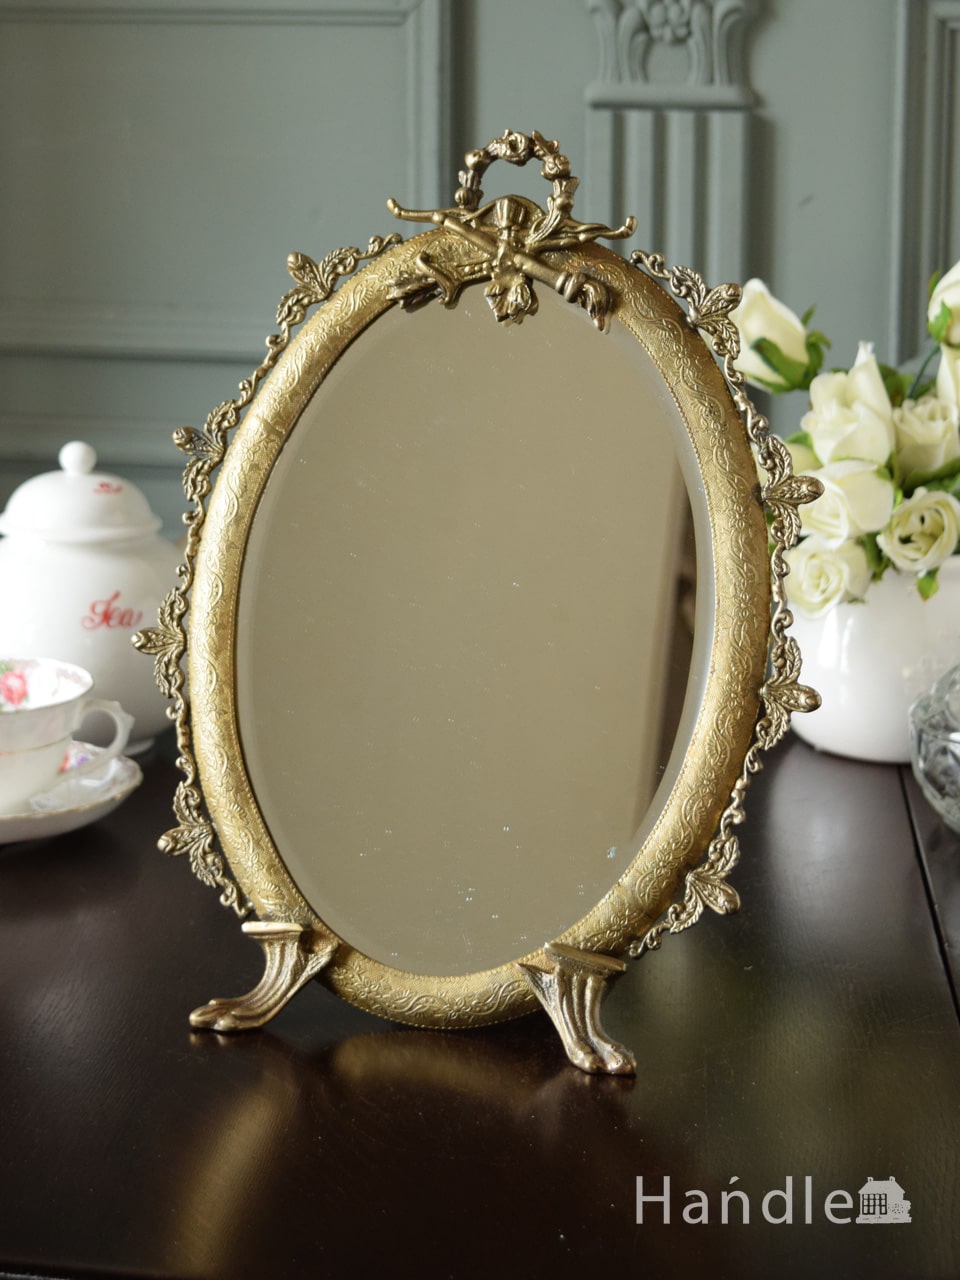 アンティーク調のおしゃれな鏡、華やかな装飾が美しいスタンドミラー